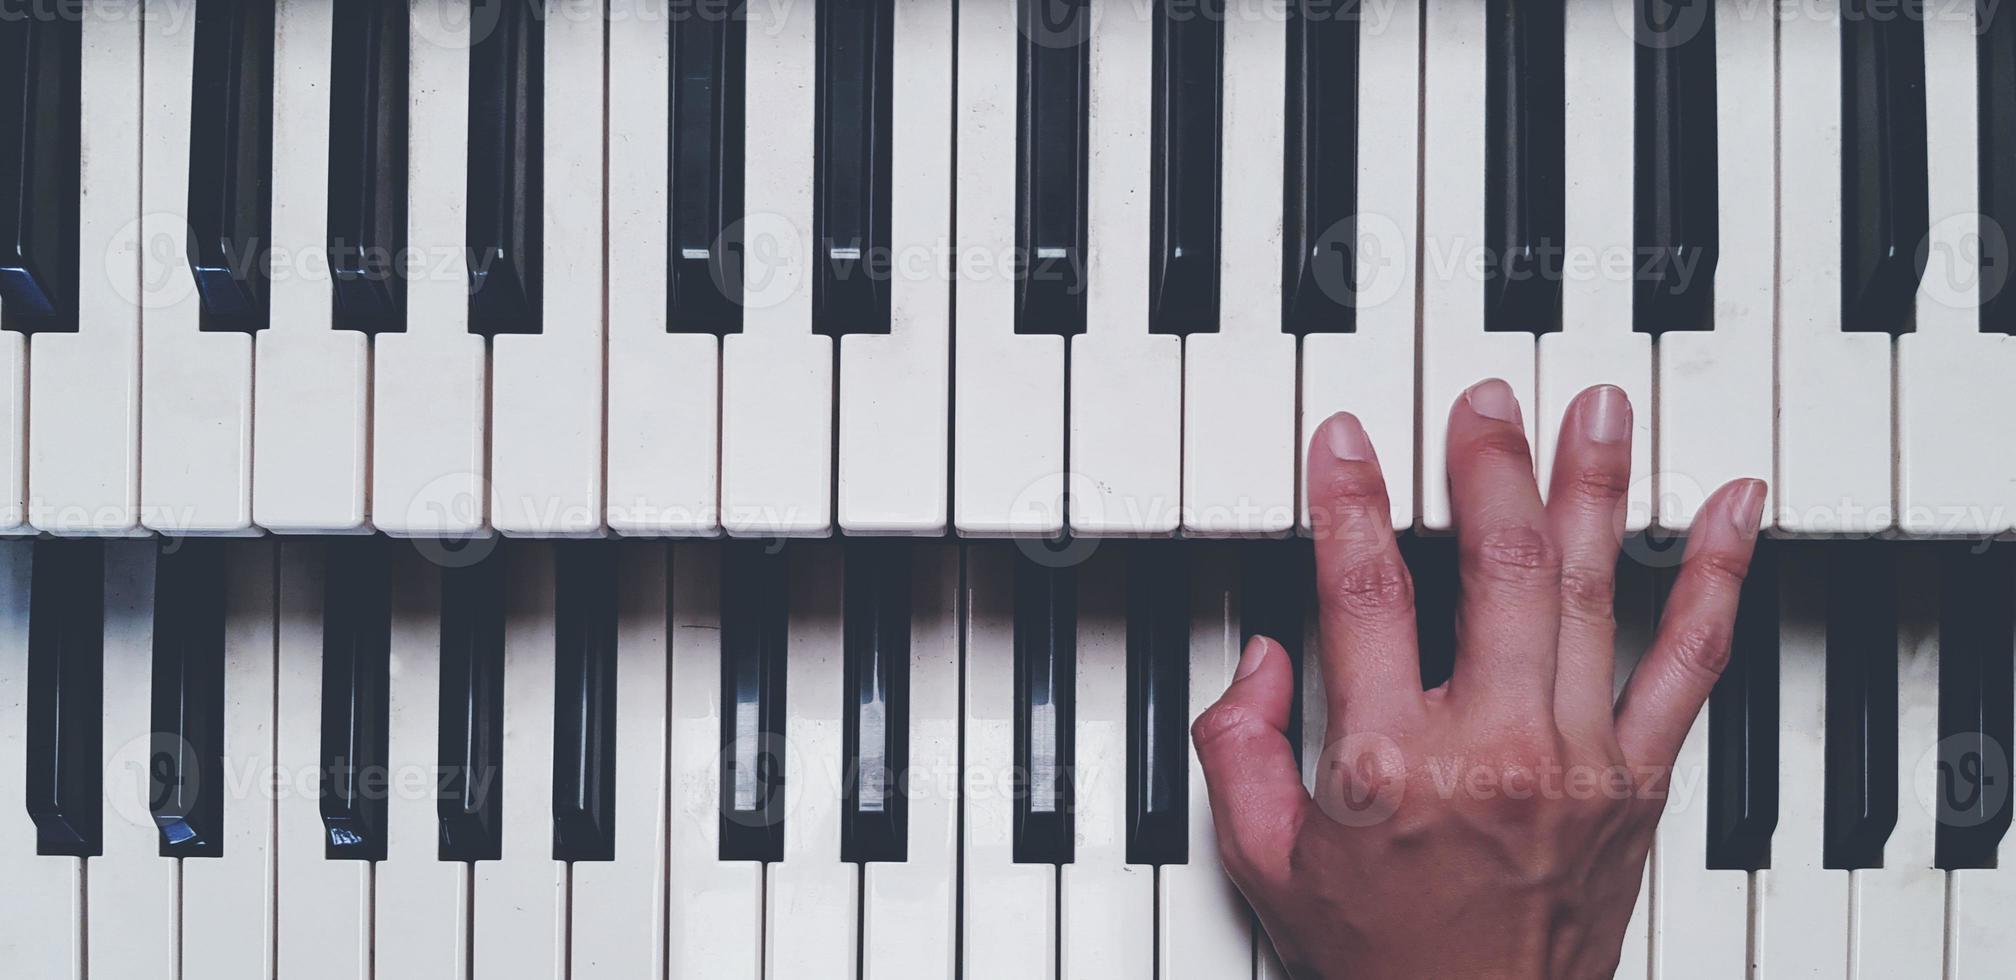 vista superior da mão tocando piano ou teclado de tom eleito no estilo de cor vintage. conceito de objeto, música e instrumento foto